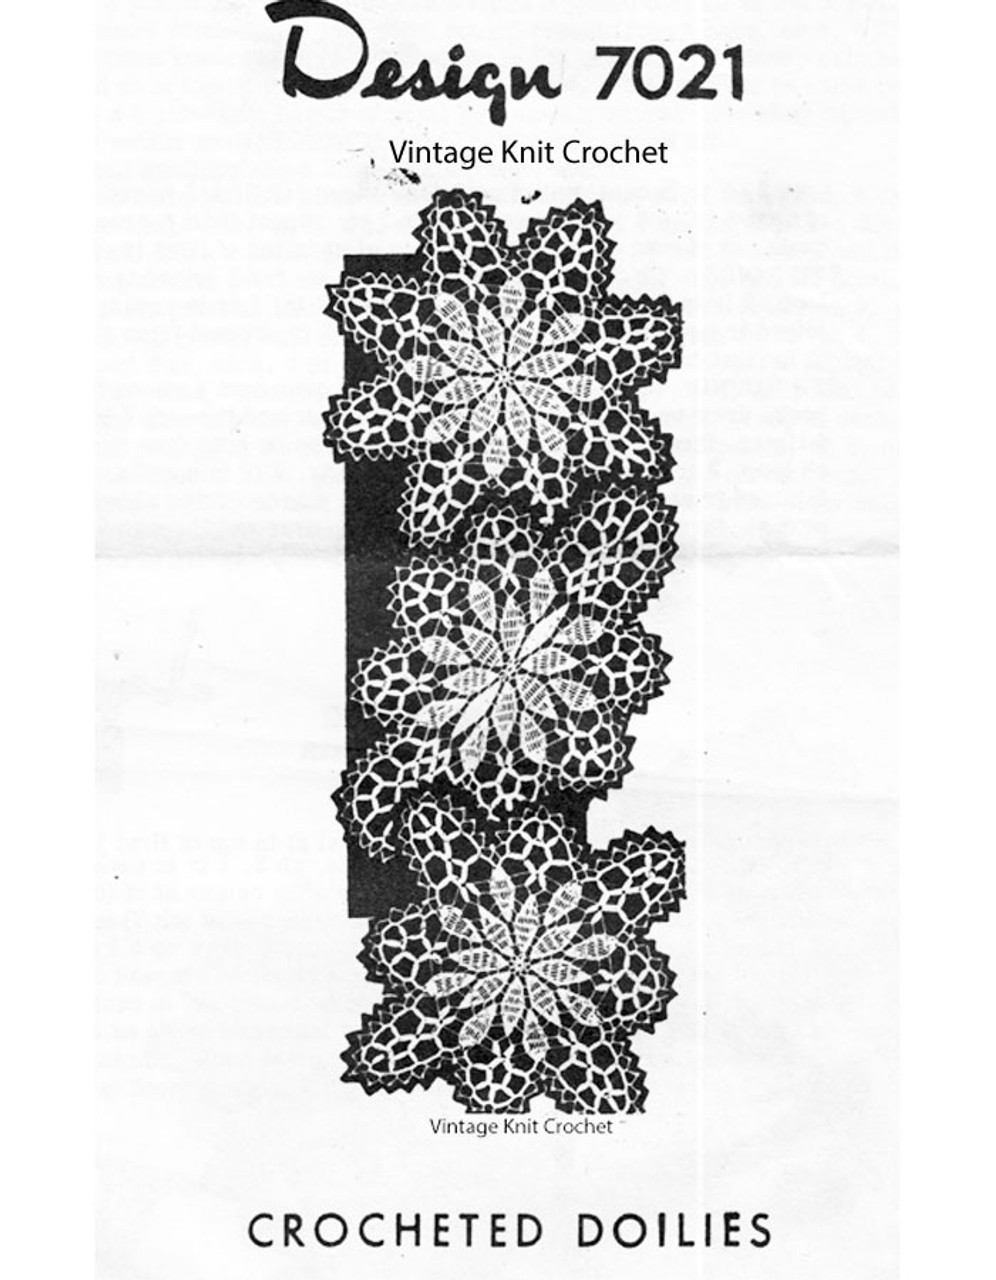 Crochet Daisy Doilies Pattern Design 7021